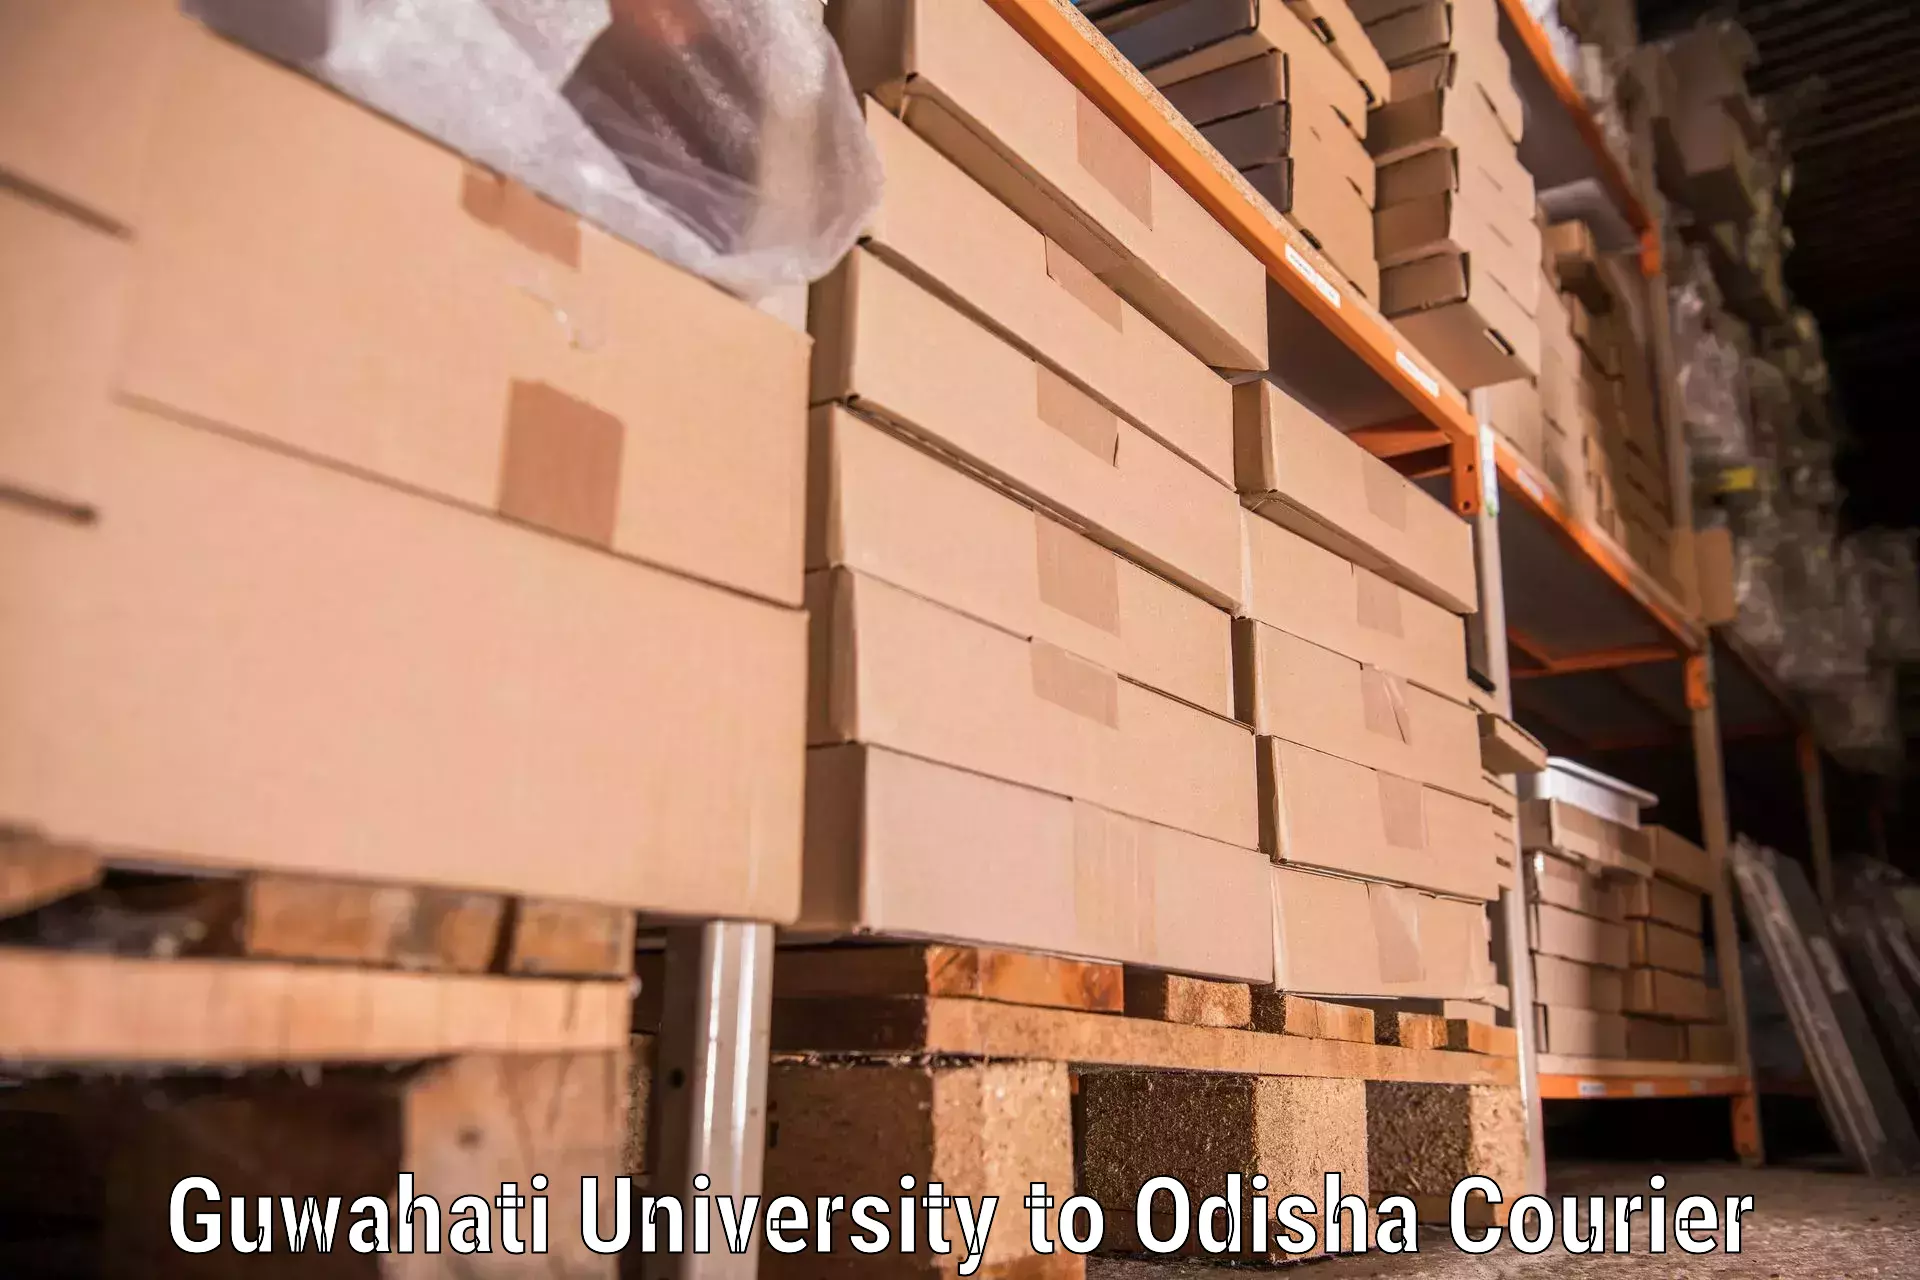 Full-service relocation in Guwahati University to Malkangiri